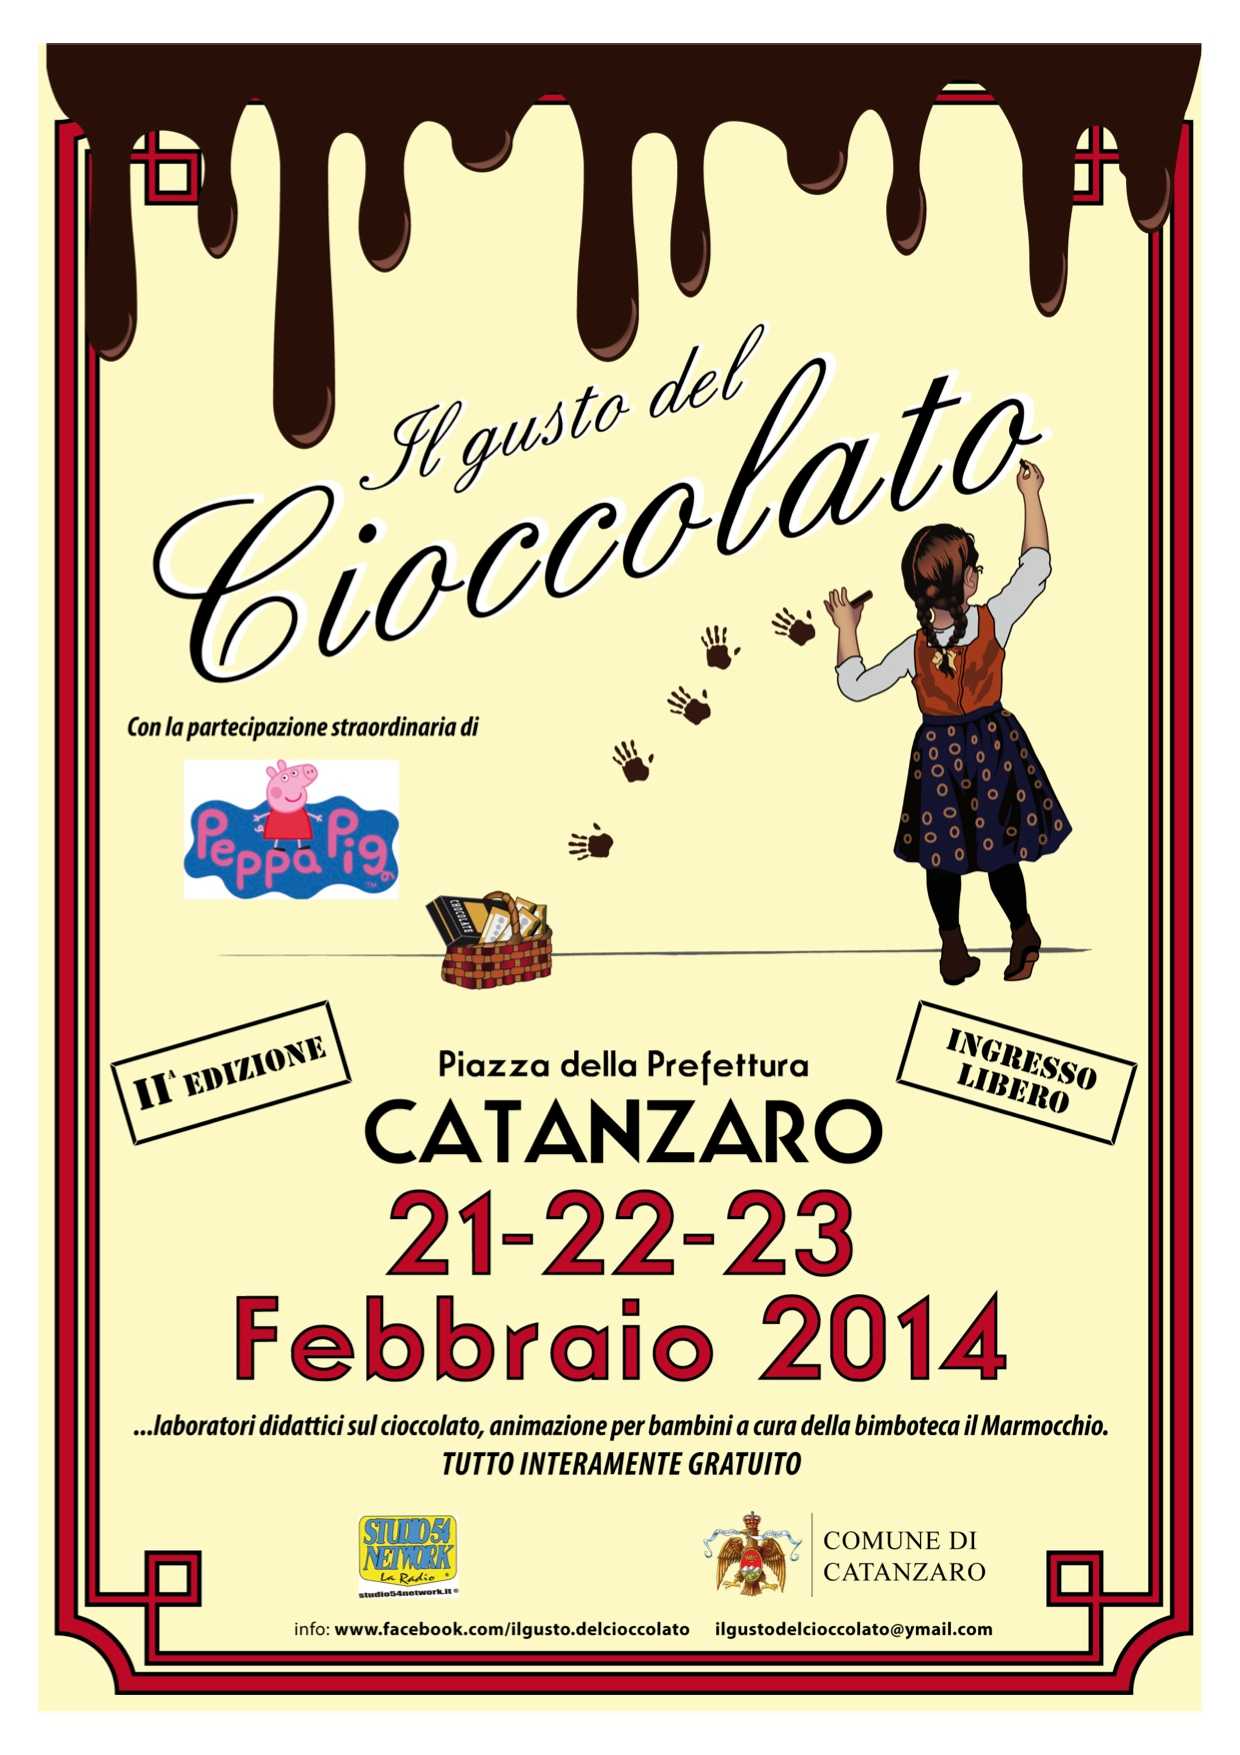 Catanzaro, al via la II edizione de "Il gusto del Cioccolato"